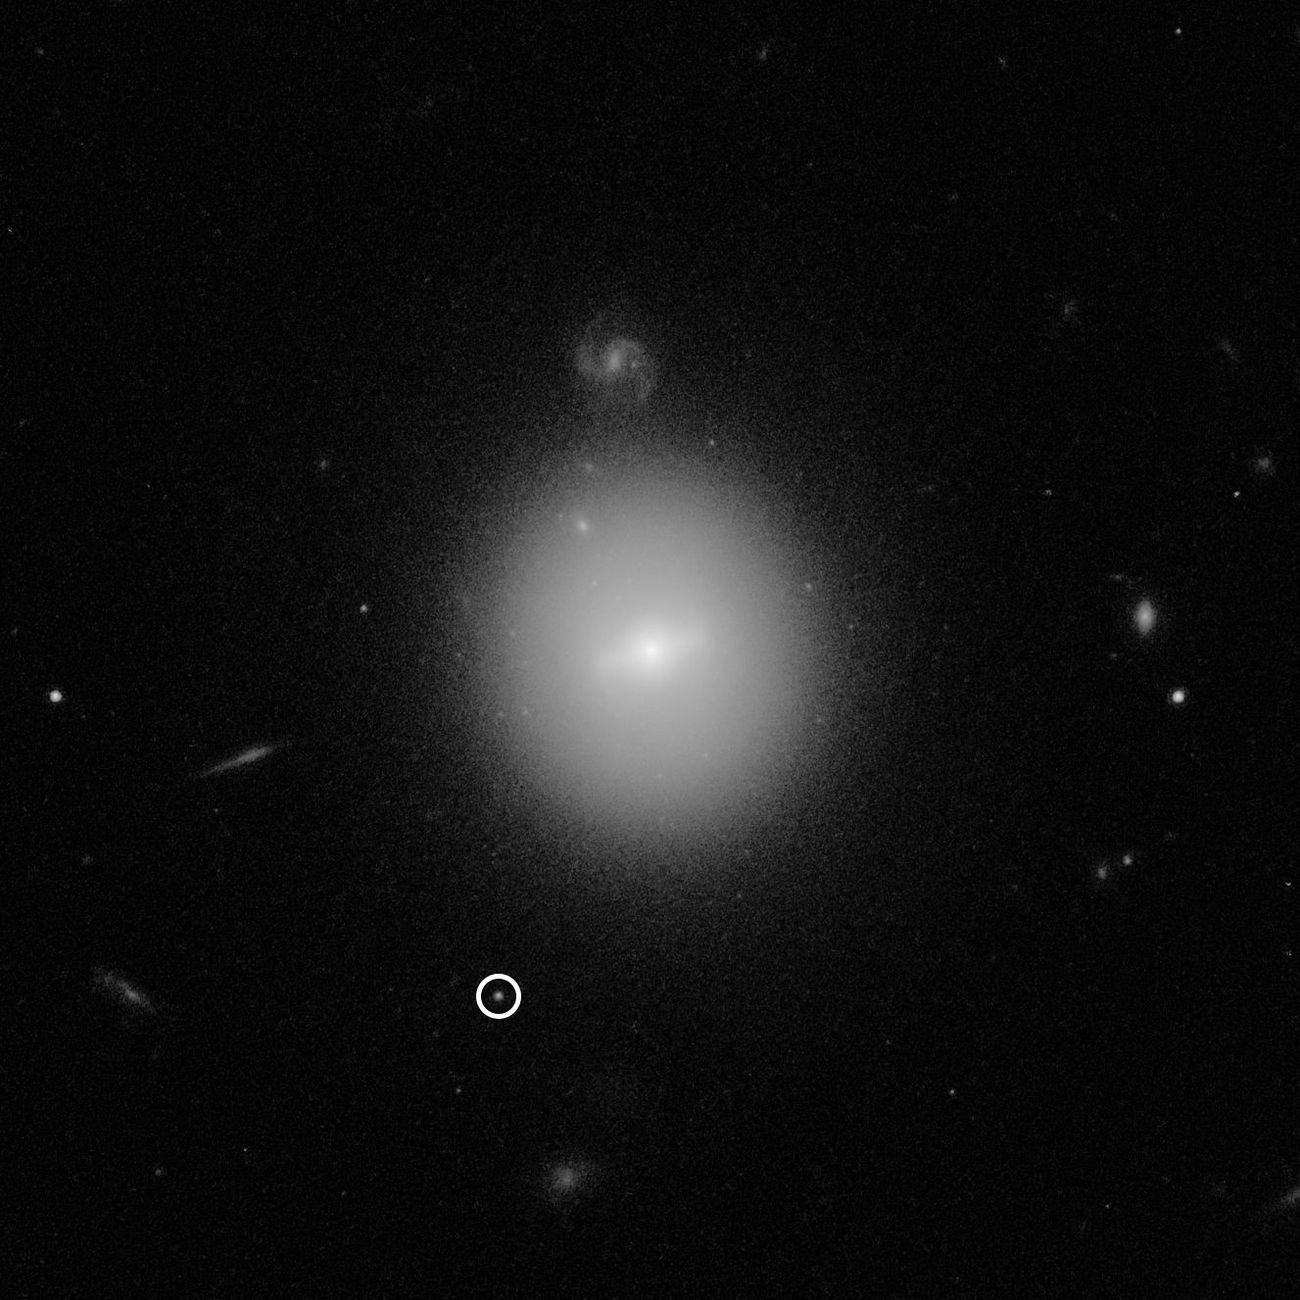 กล้องโทรทรรศน์อวกาศฮับเบิลค้นพบหลักฐานสำคัญที่อาจบ่งชี้ถึง “หลุมดำขนาดกลาง”